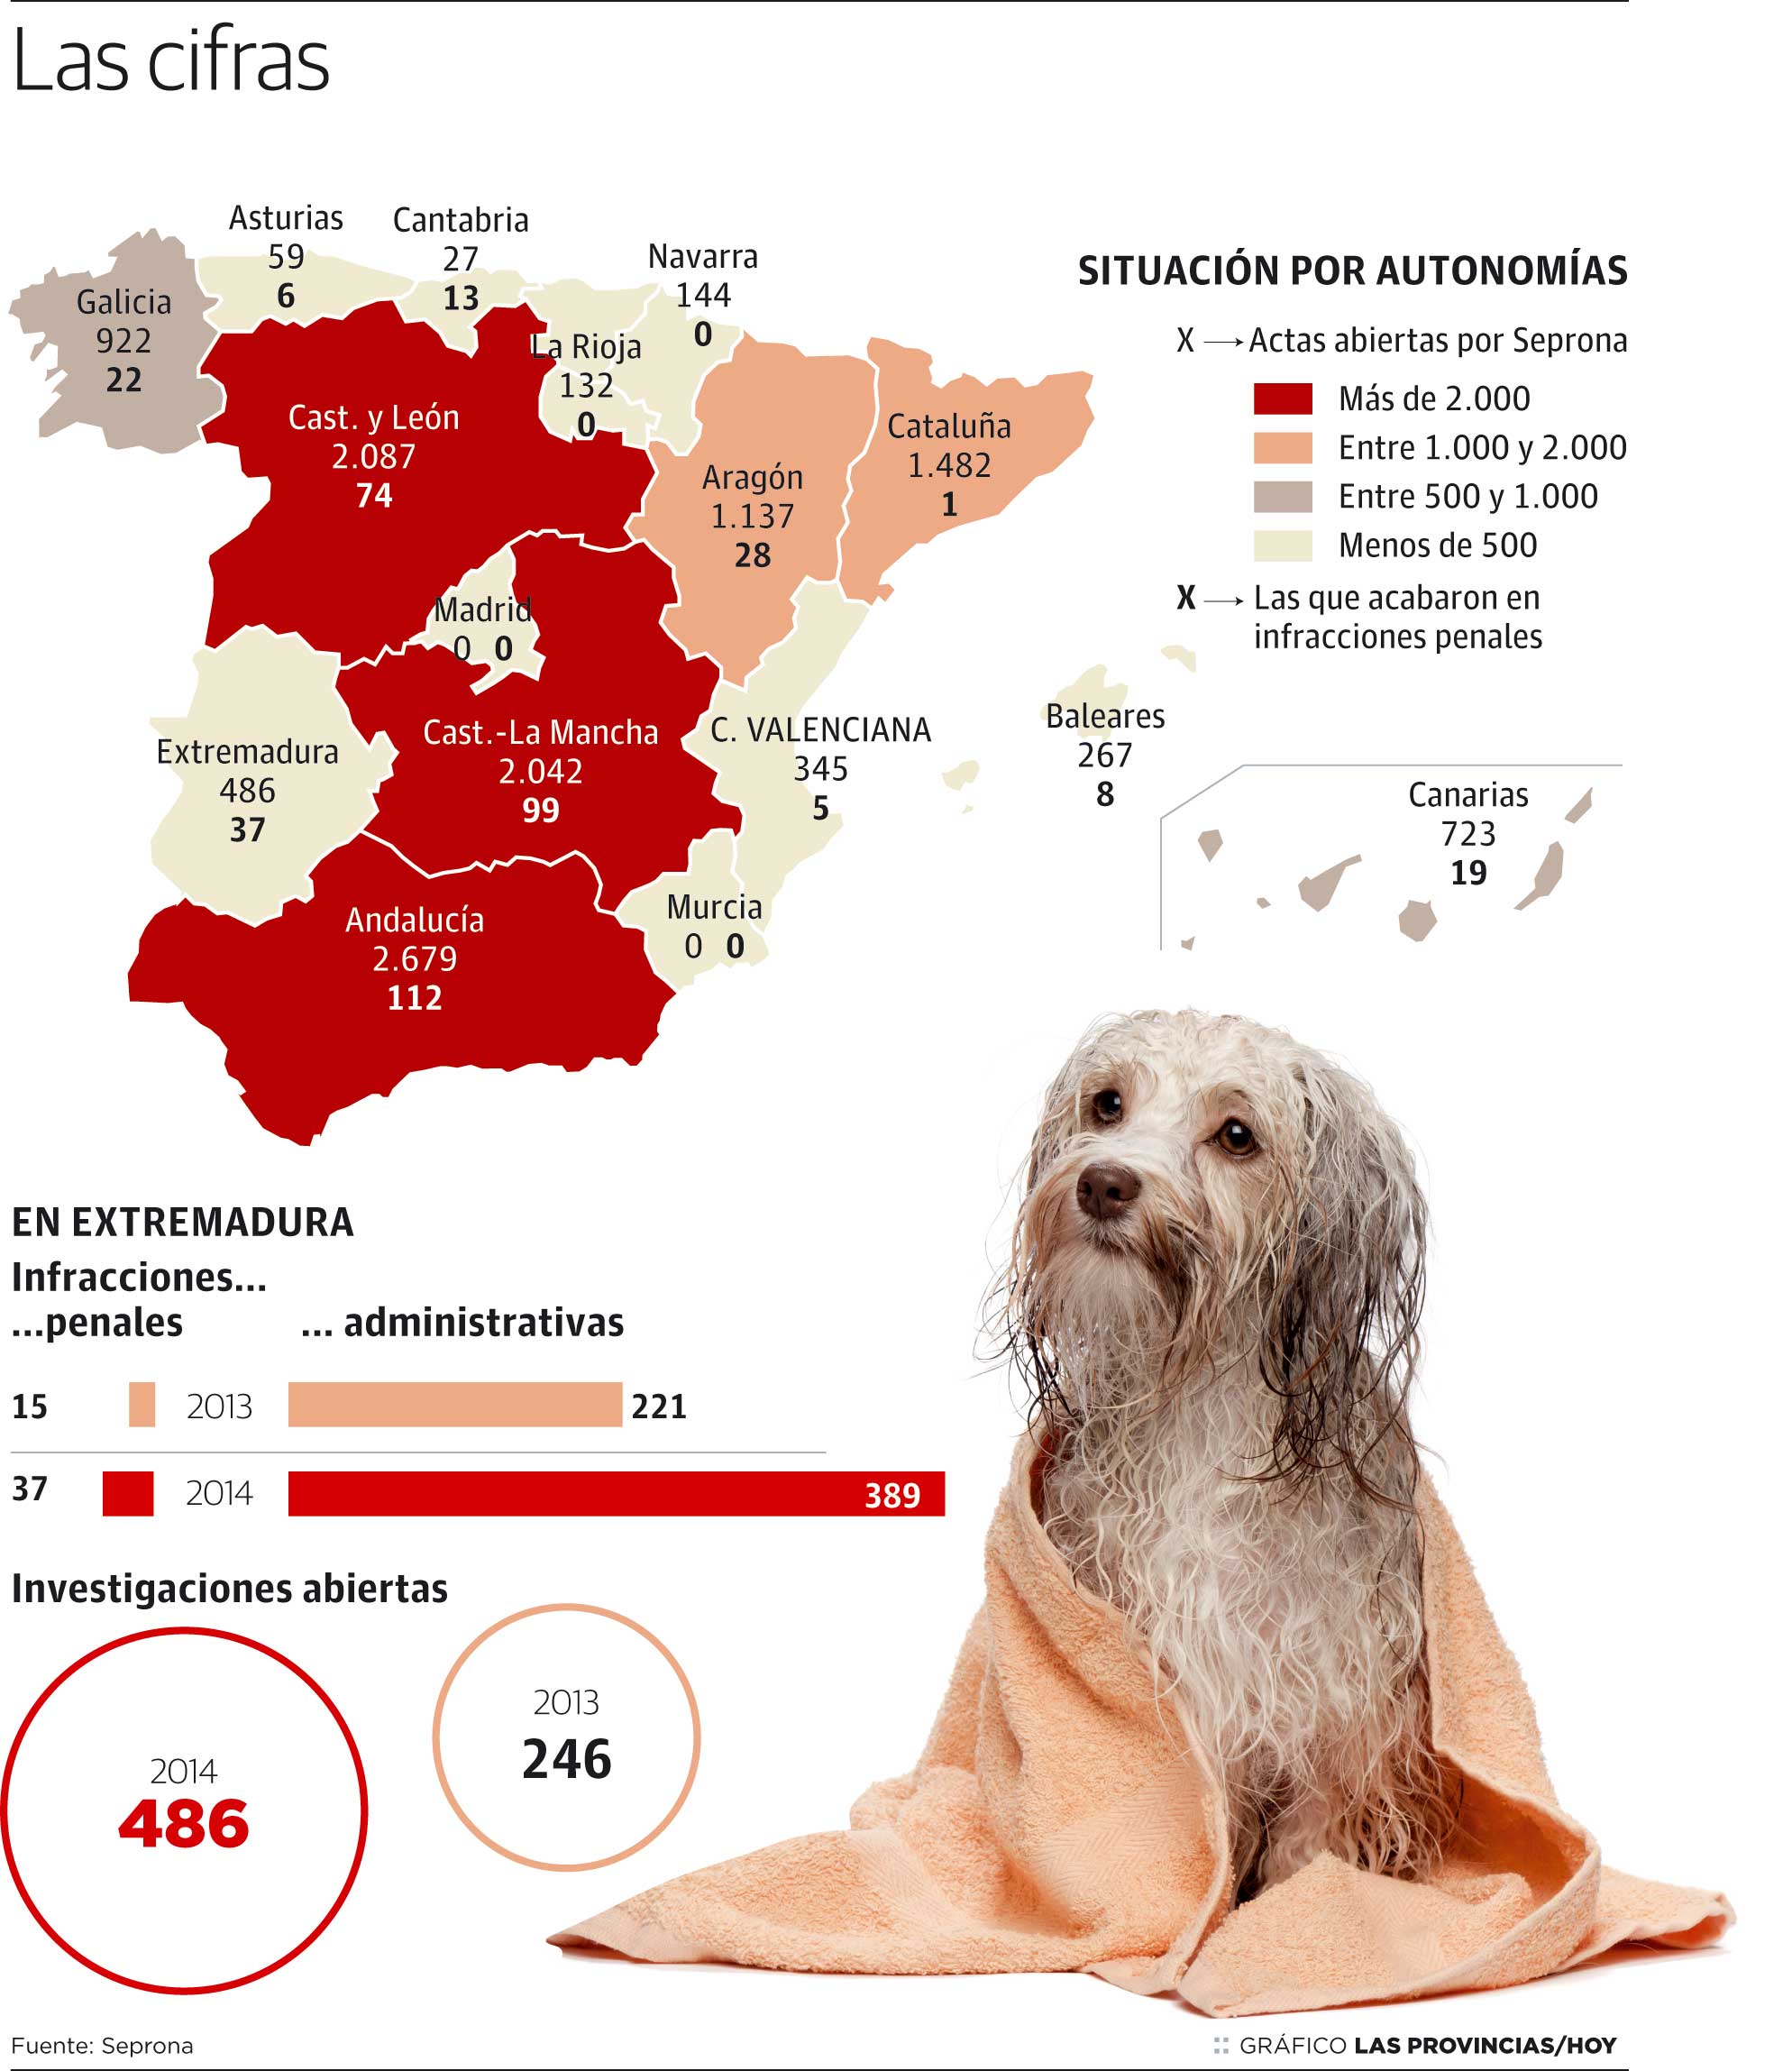 El Seprona investigó 486 maltratos a perros en la región el año pasado